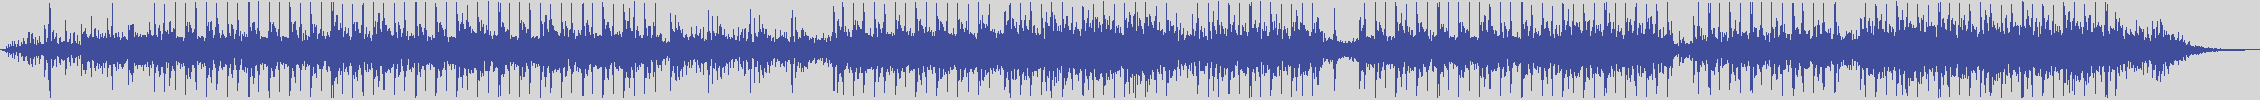 noclouds_chillout [NOC146] Xm Ensemble - Dark & Blonde [Original Mix] audio wave form